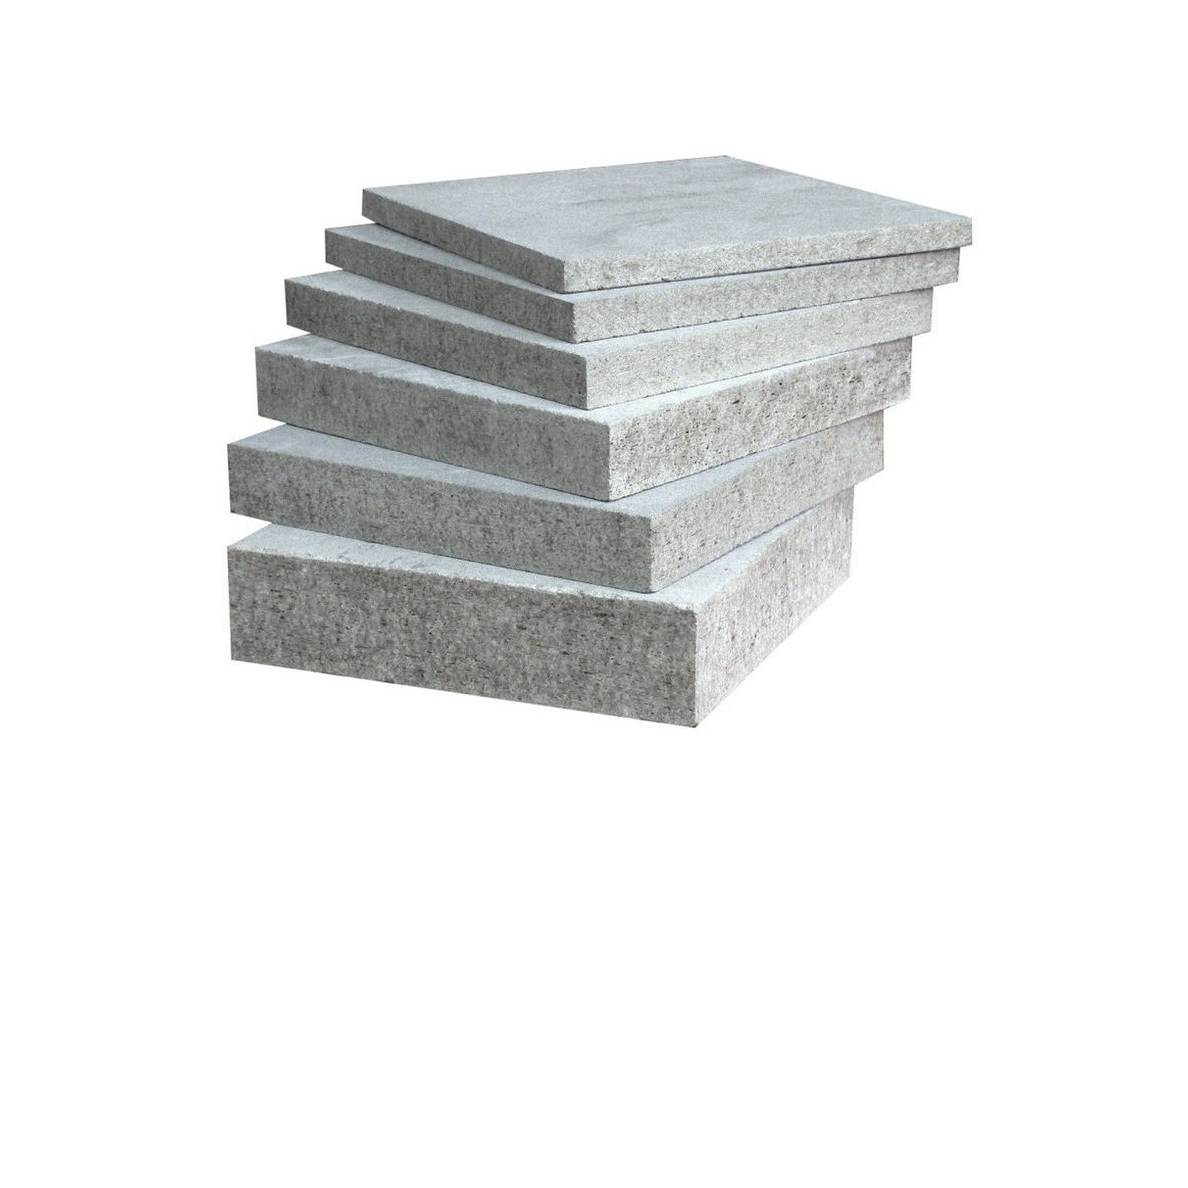 Цементно Стружечная Плита Купить